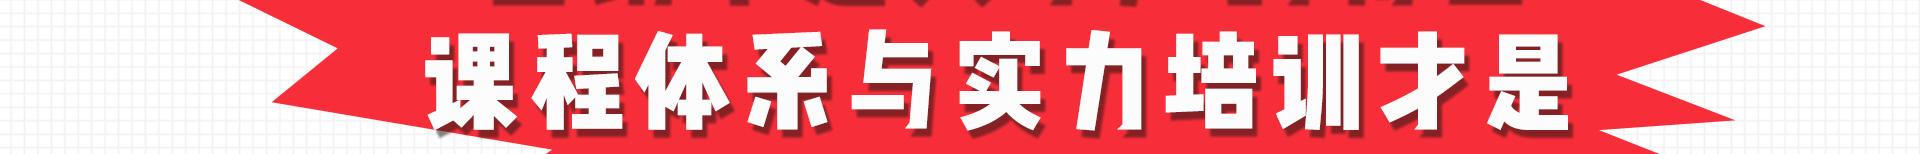 加盟网站zuizhong_146.jpg